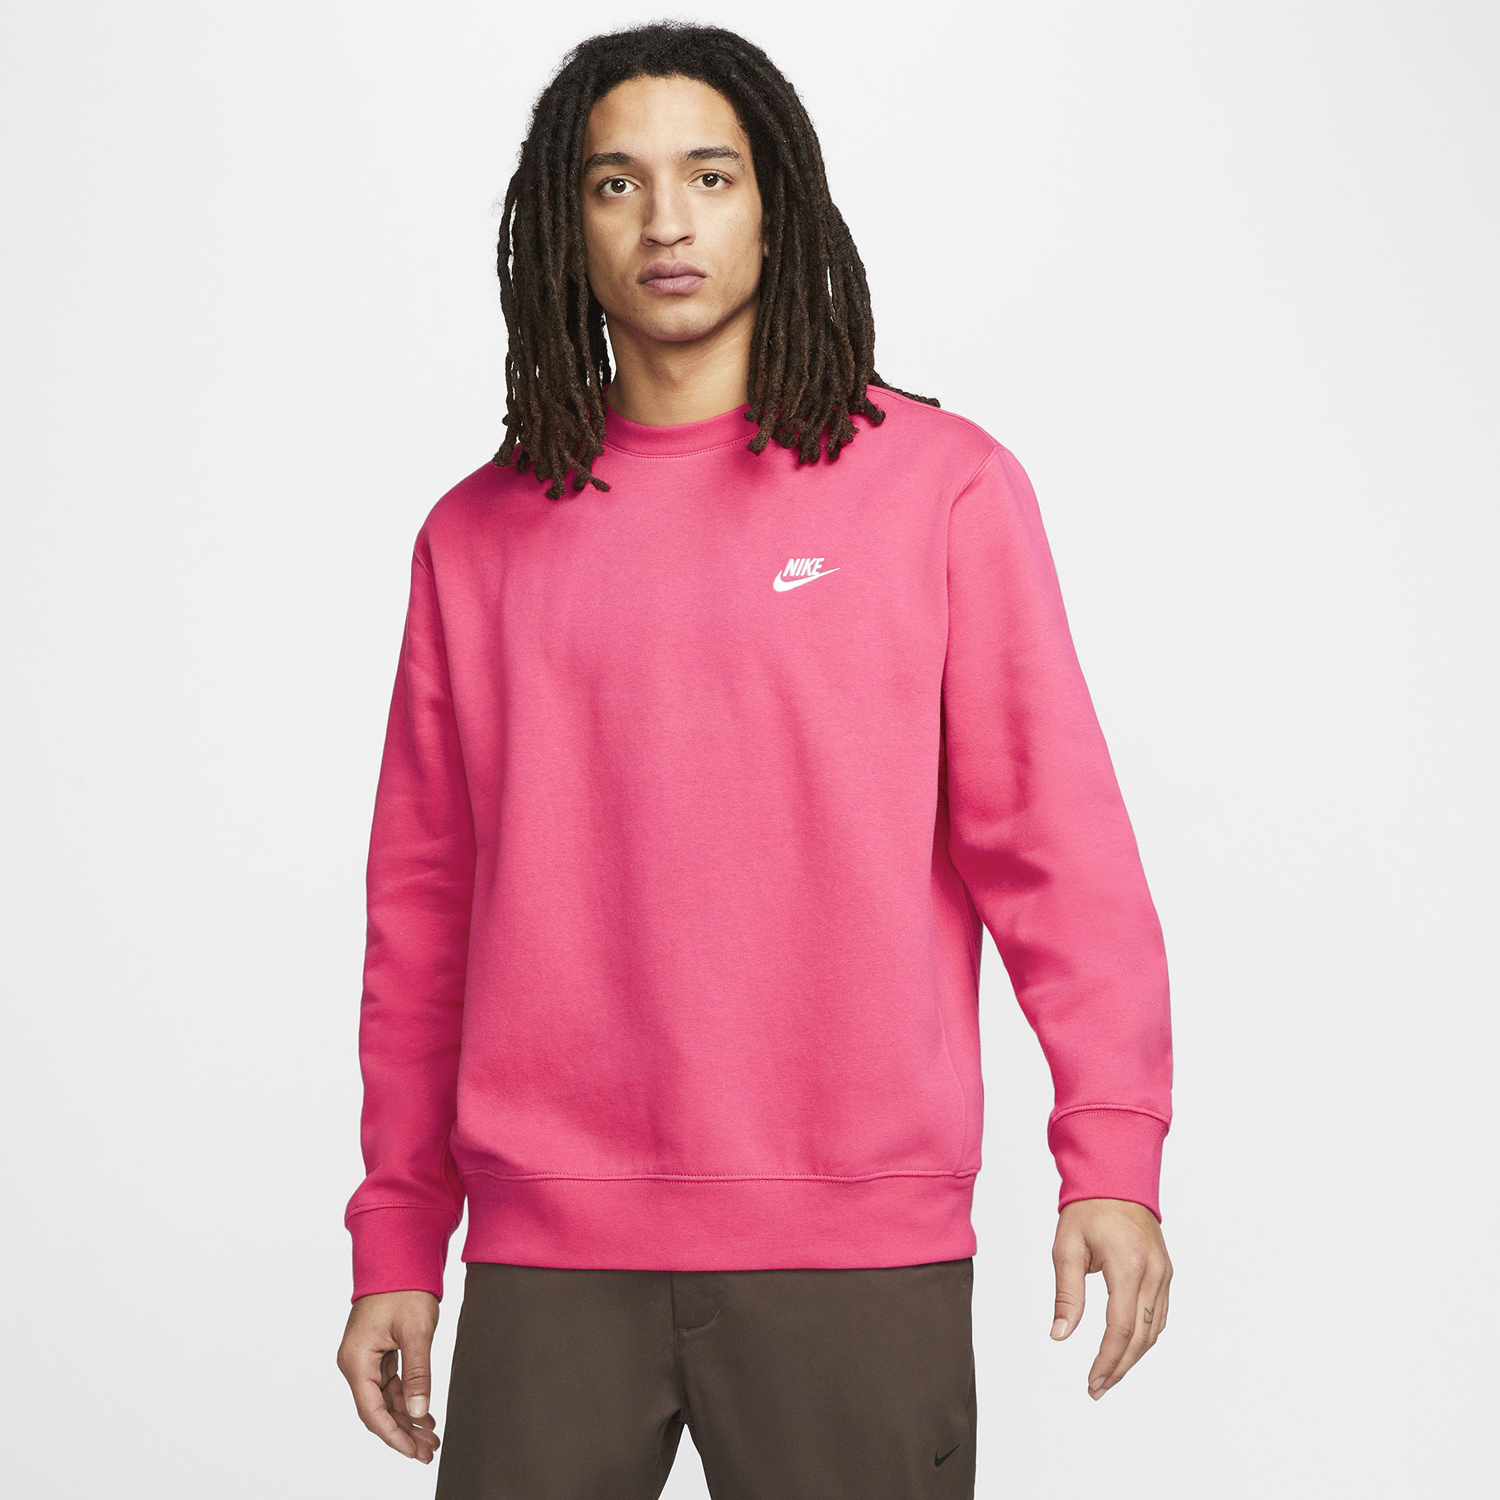 nike-club-fleece-crew-sweatshirt-rush-pink